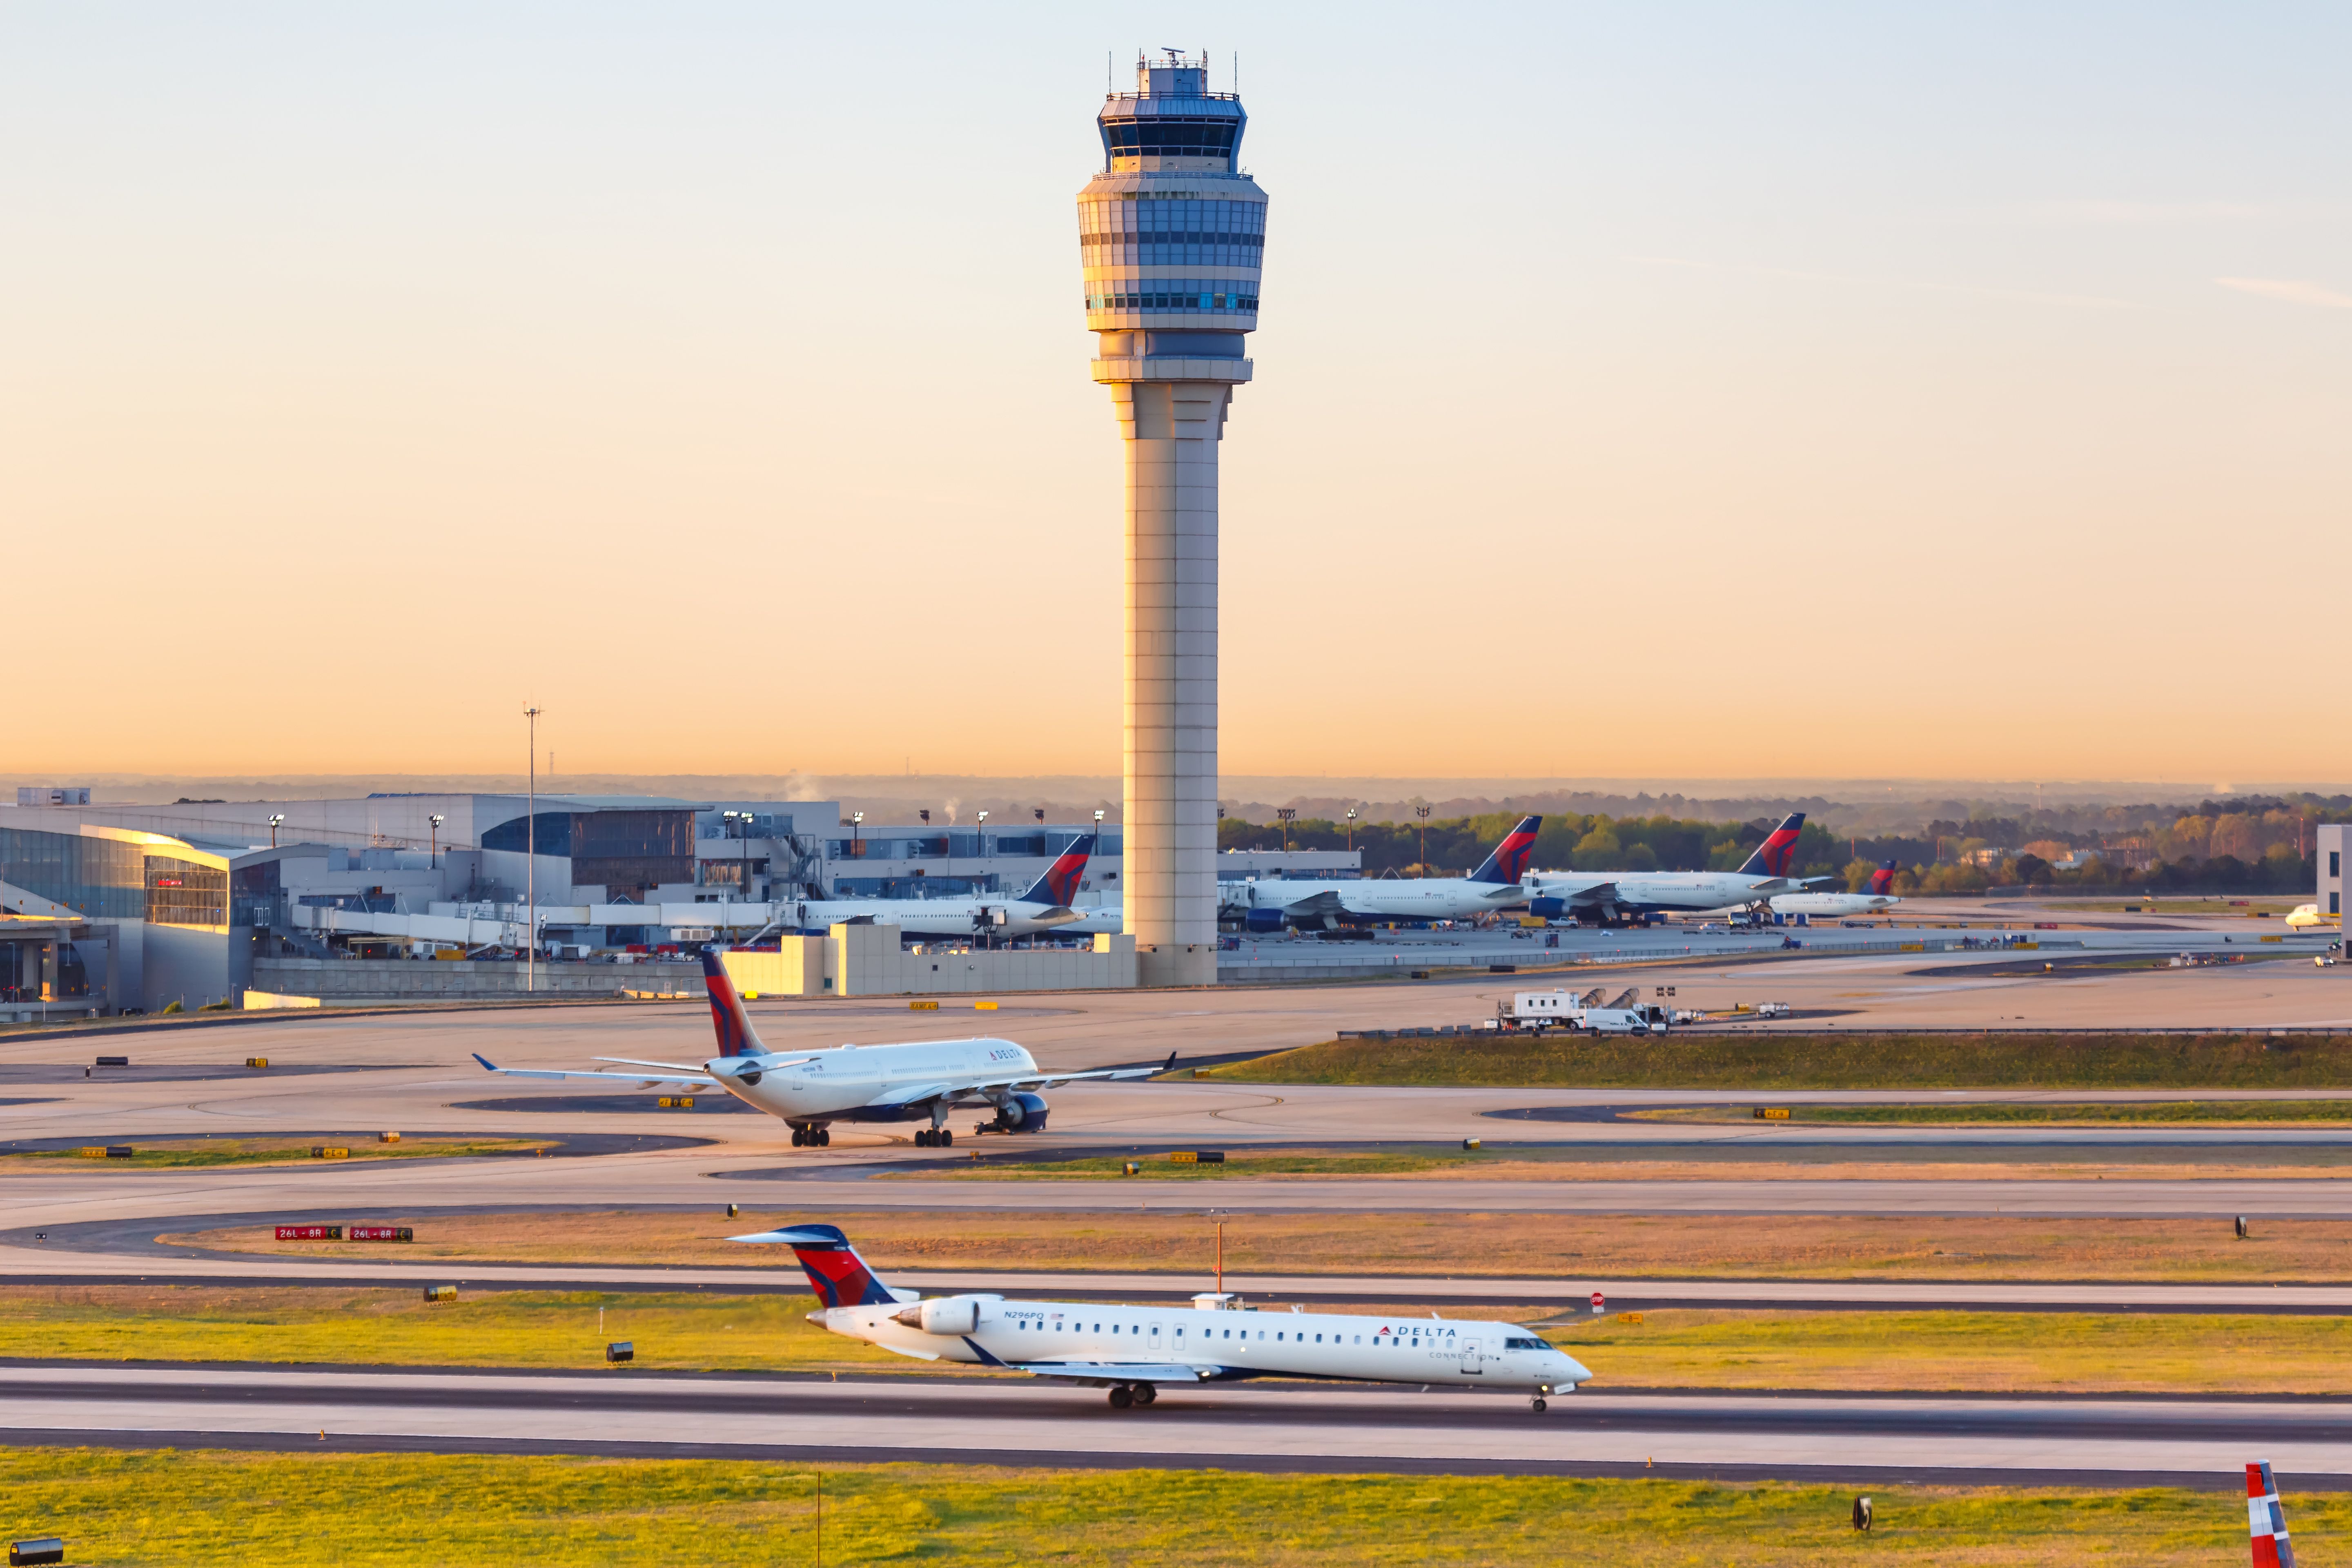 The apron and ATC tower at Hartsfield-Jackston Atlanta International airport.